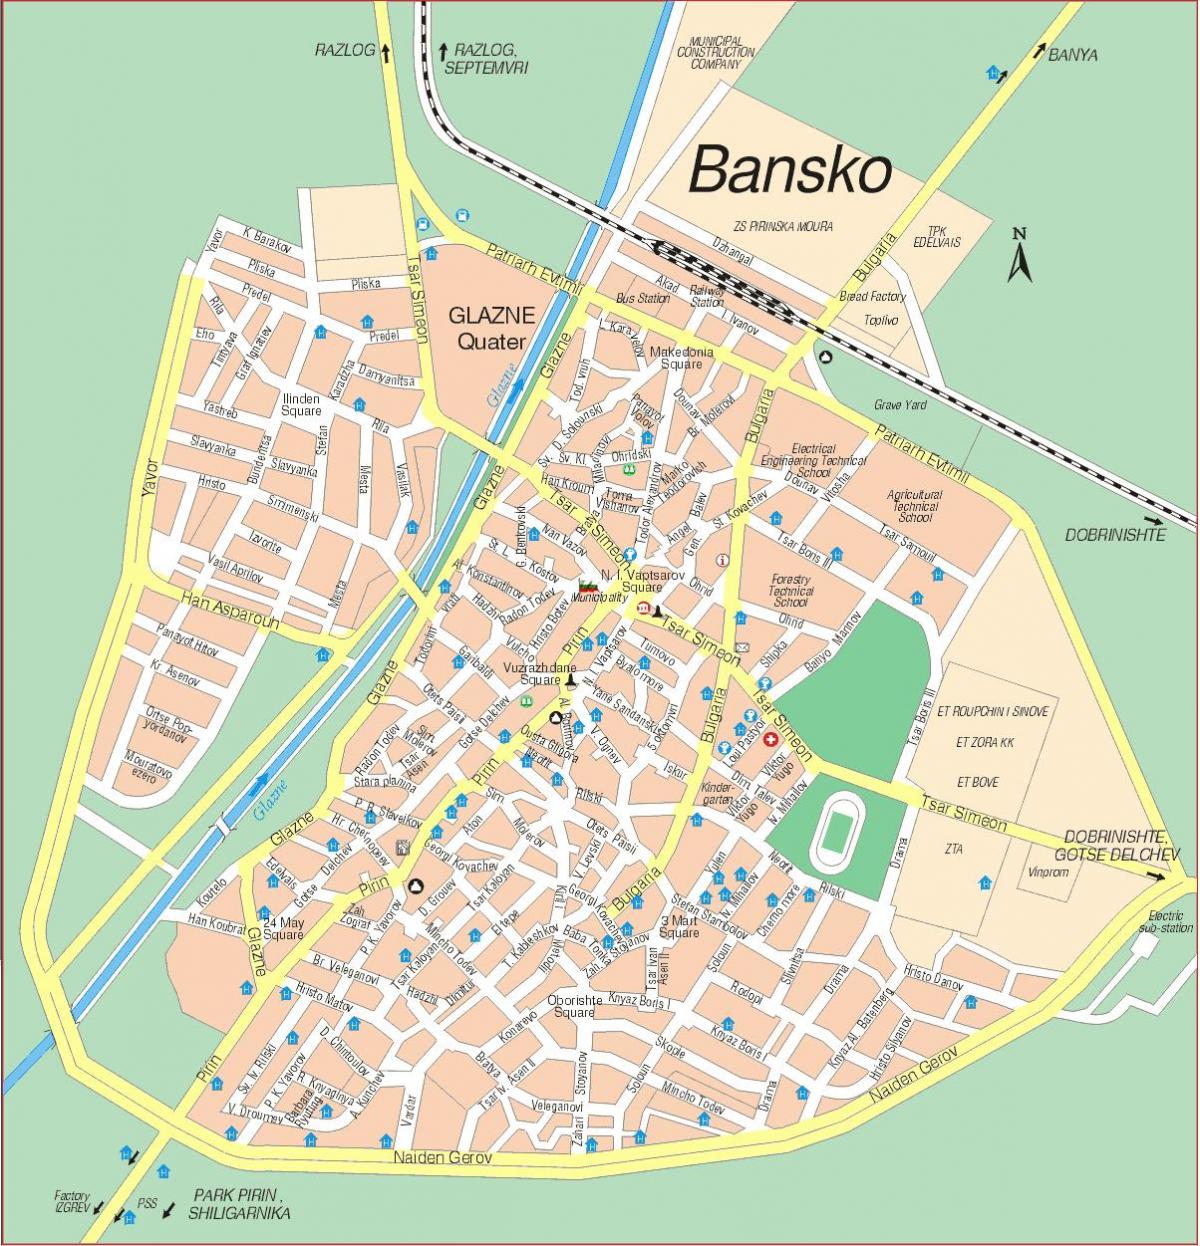 বুলগেরিয়া bansko মানচিত্র